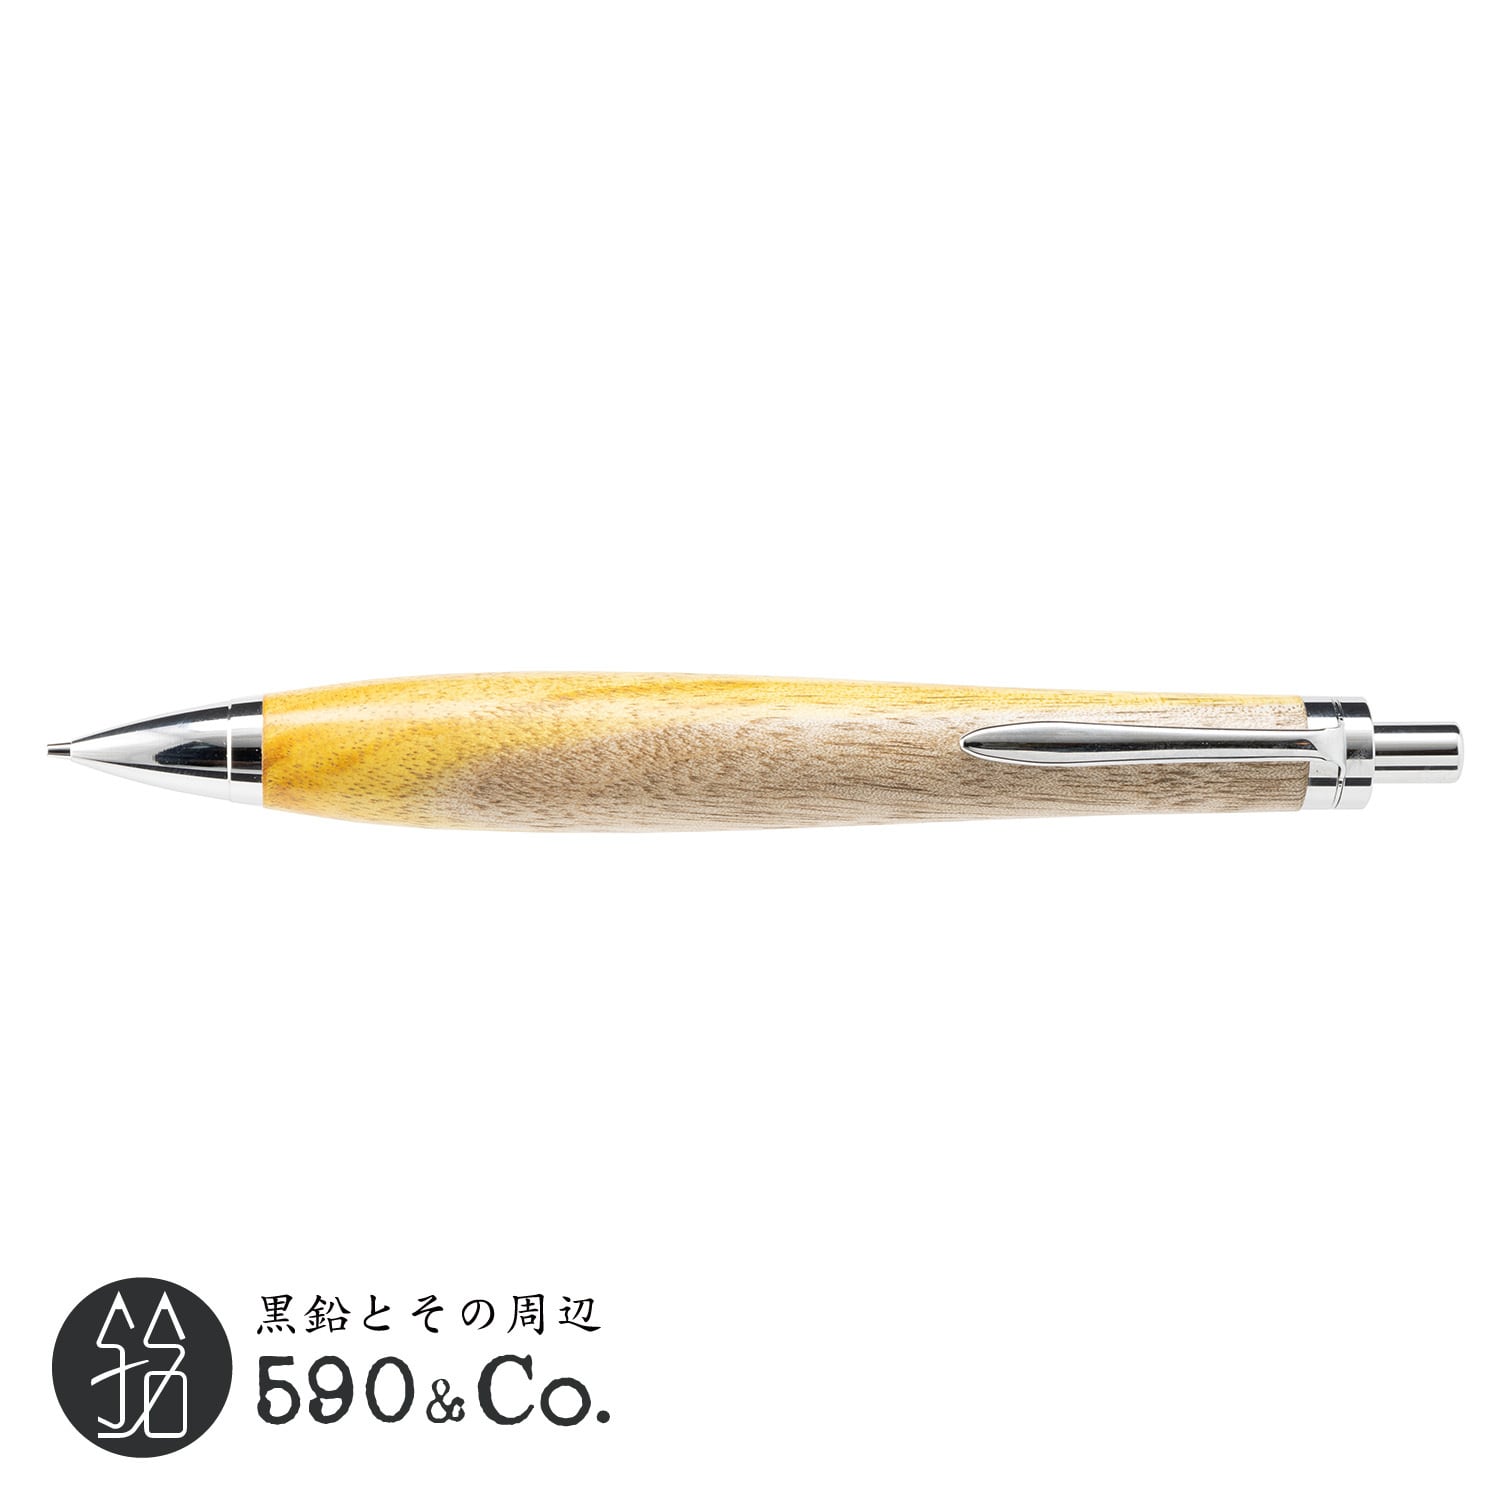 【木軸ペン工房KIKI】ハゼノキ シャープペンシル 590Co.